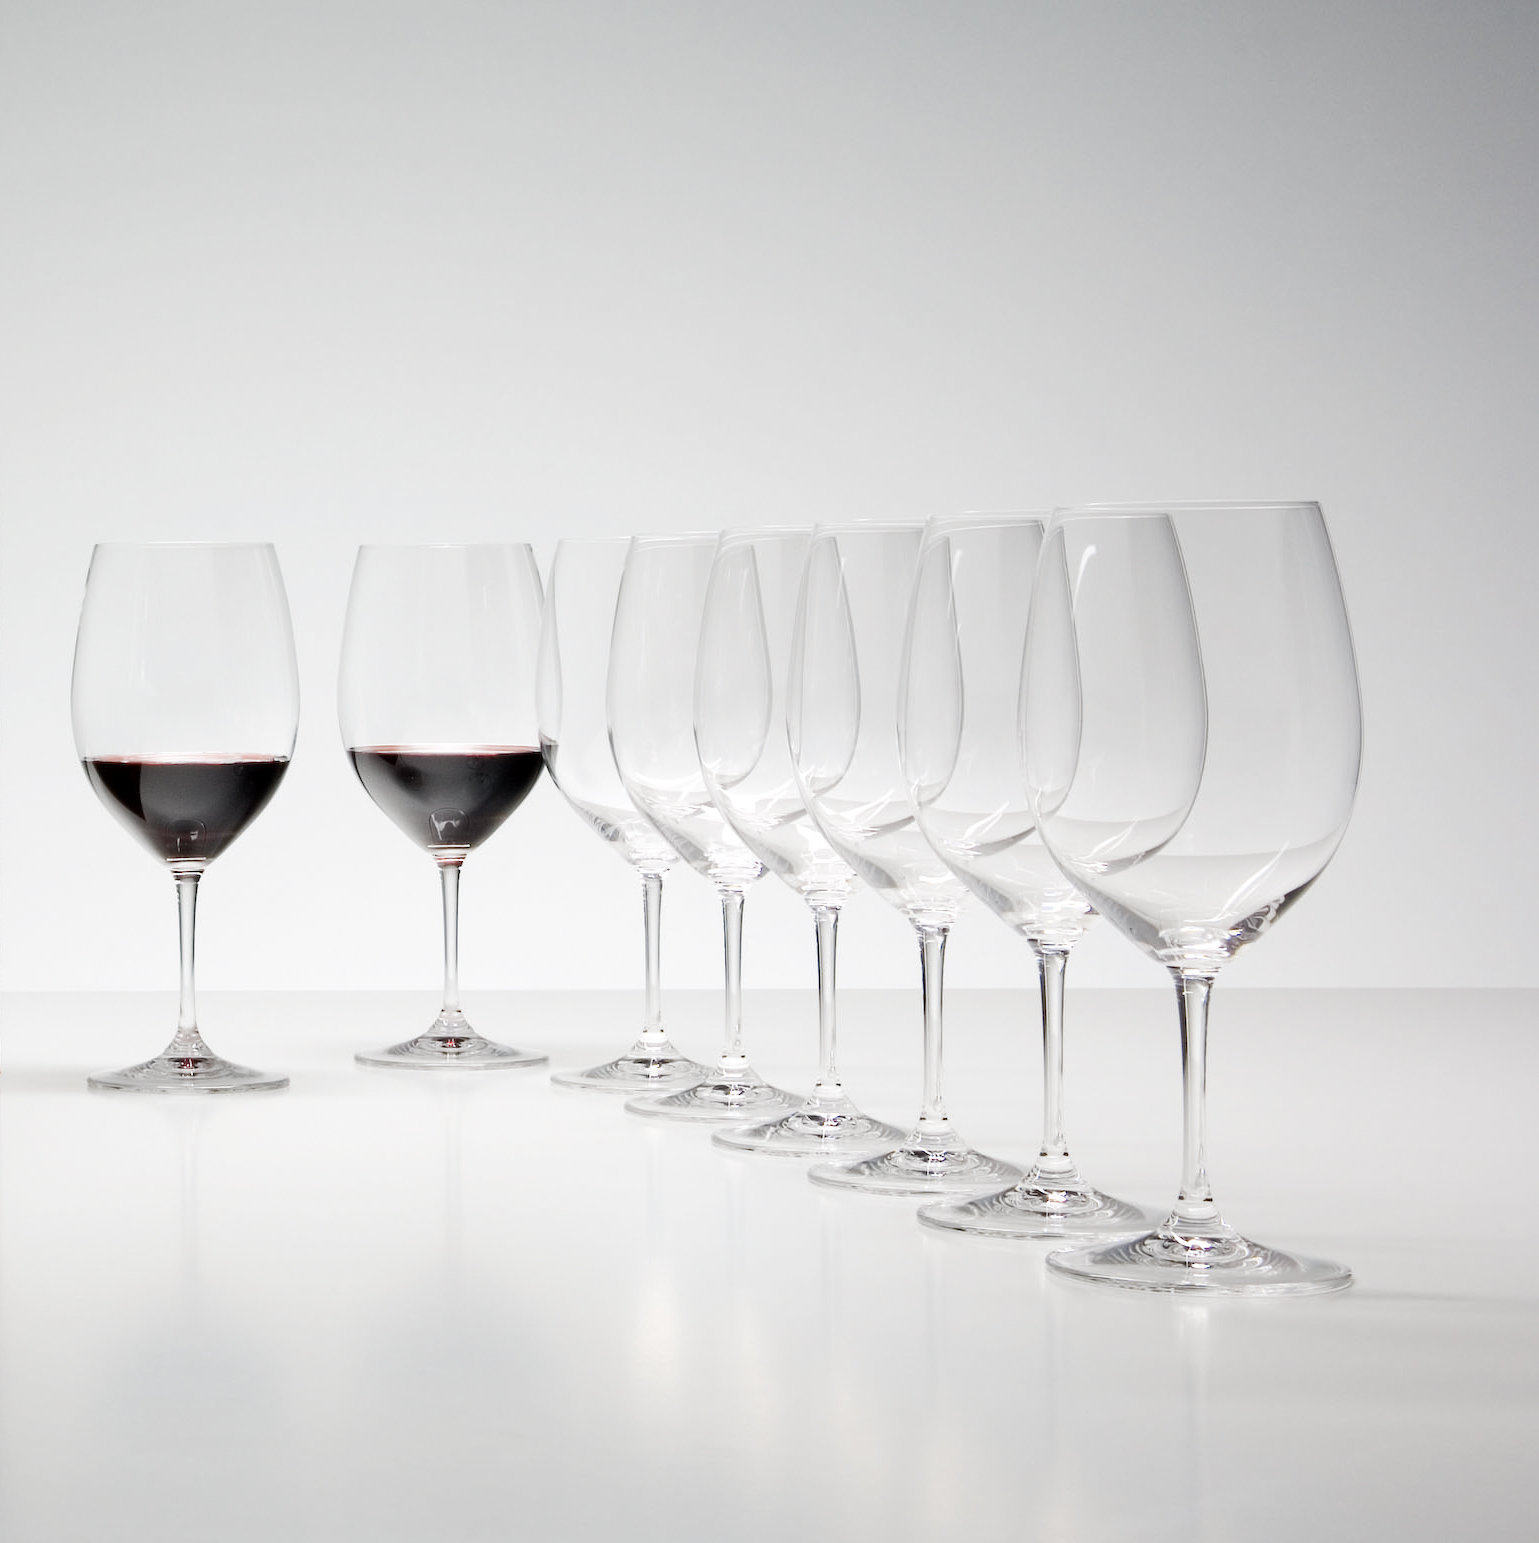 https://assets.wfcdn.com/im/56695911/compr-r85/1199/11993187/riedel-vinum-cabernet-sauvignonmerlot-wine-glass-bordeauxpay-6-get-8.jpg